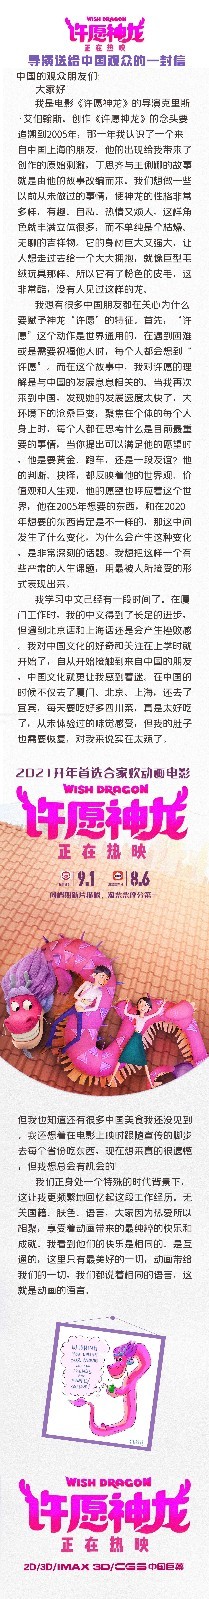 《许愿神龙》将成2021上映首部破亿电影 导演自称中国文化迷弟